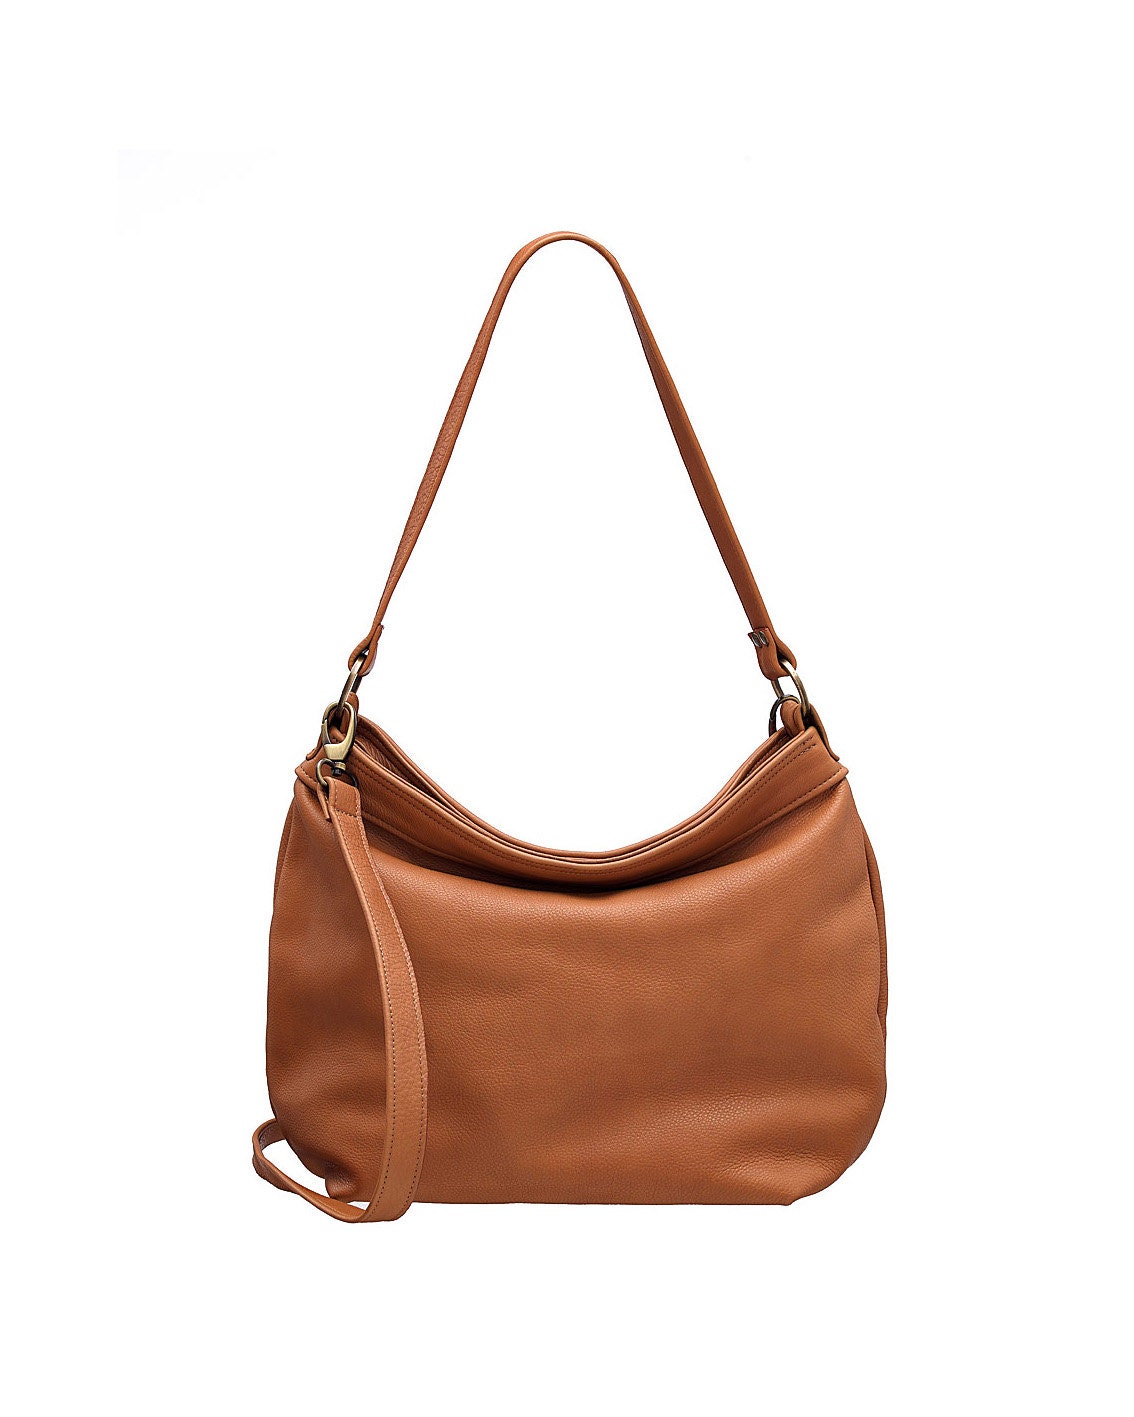 Tan hobo purse Tan soft leather bag Leather hobo bag